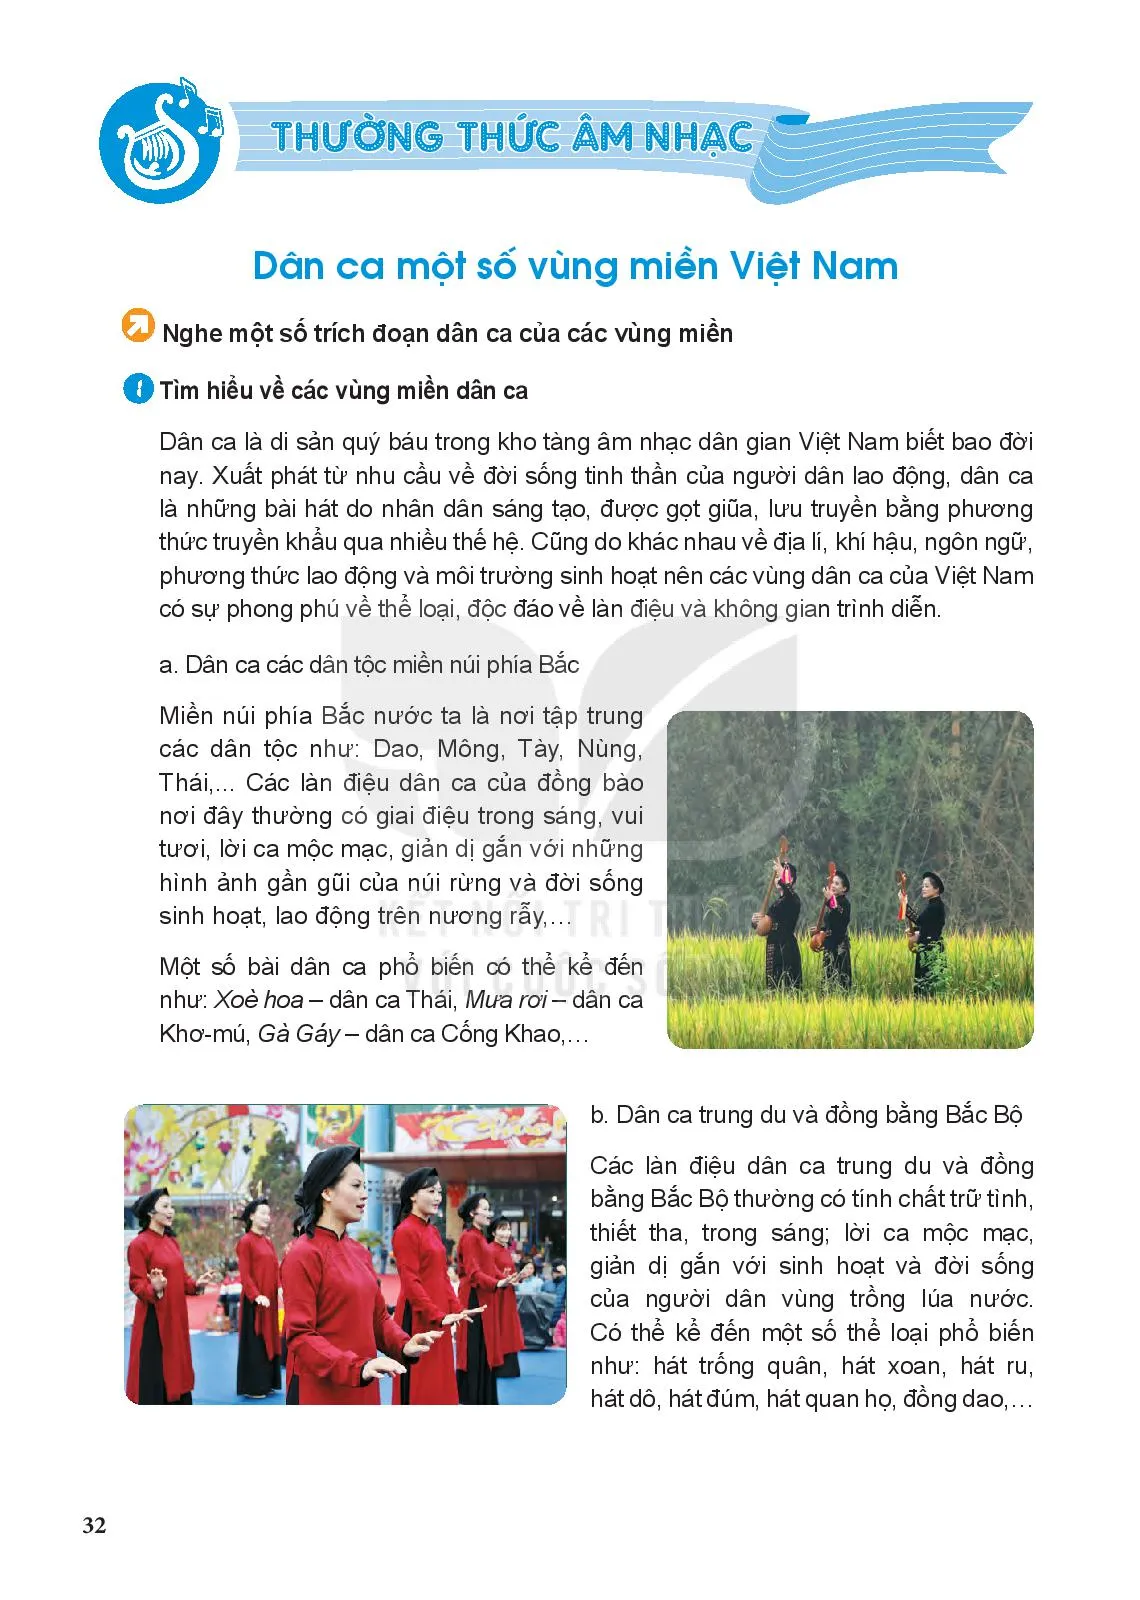 Thường thức âm nhạc: Dân ca một số vùng miền Việt Nam